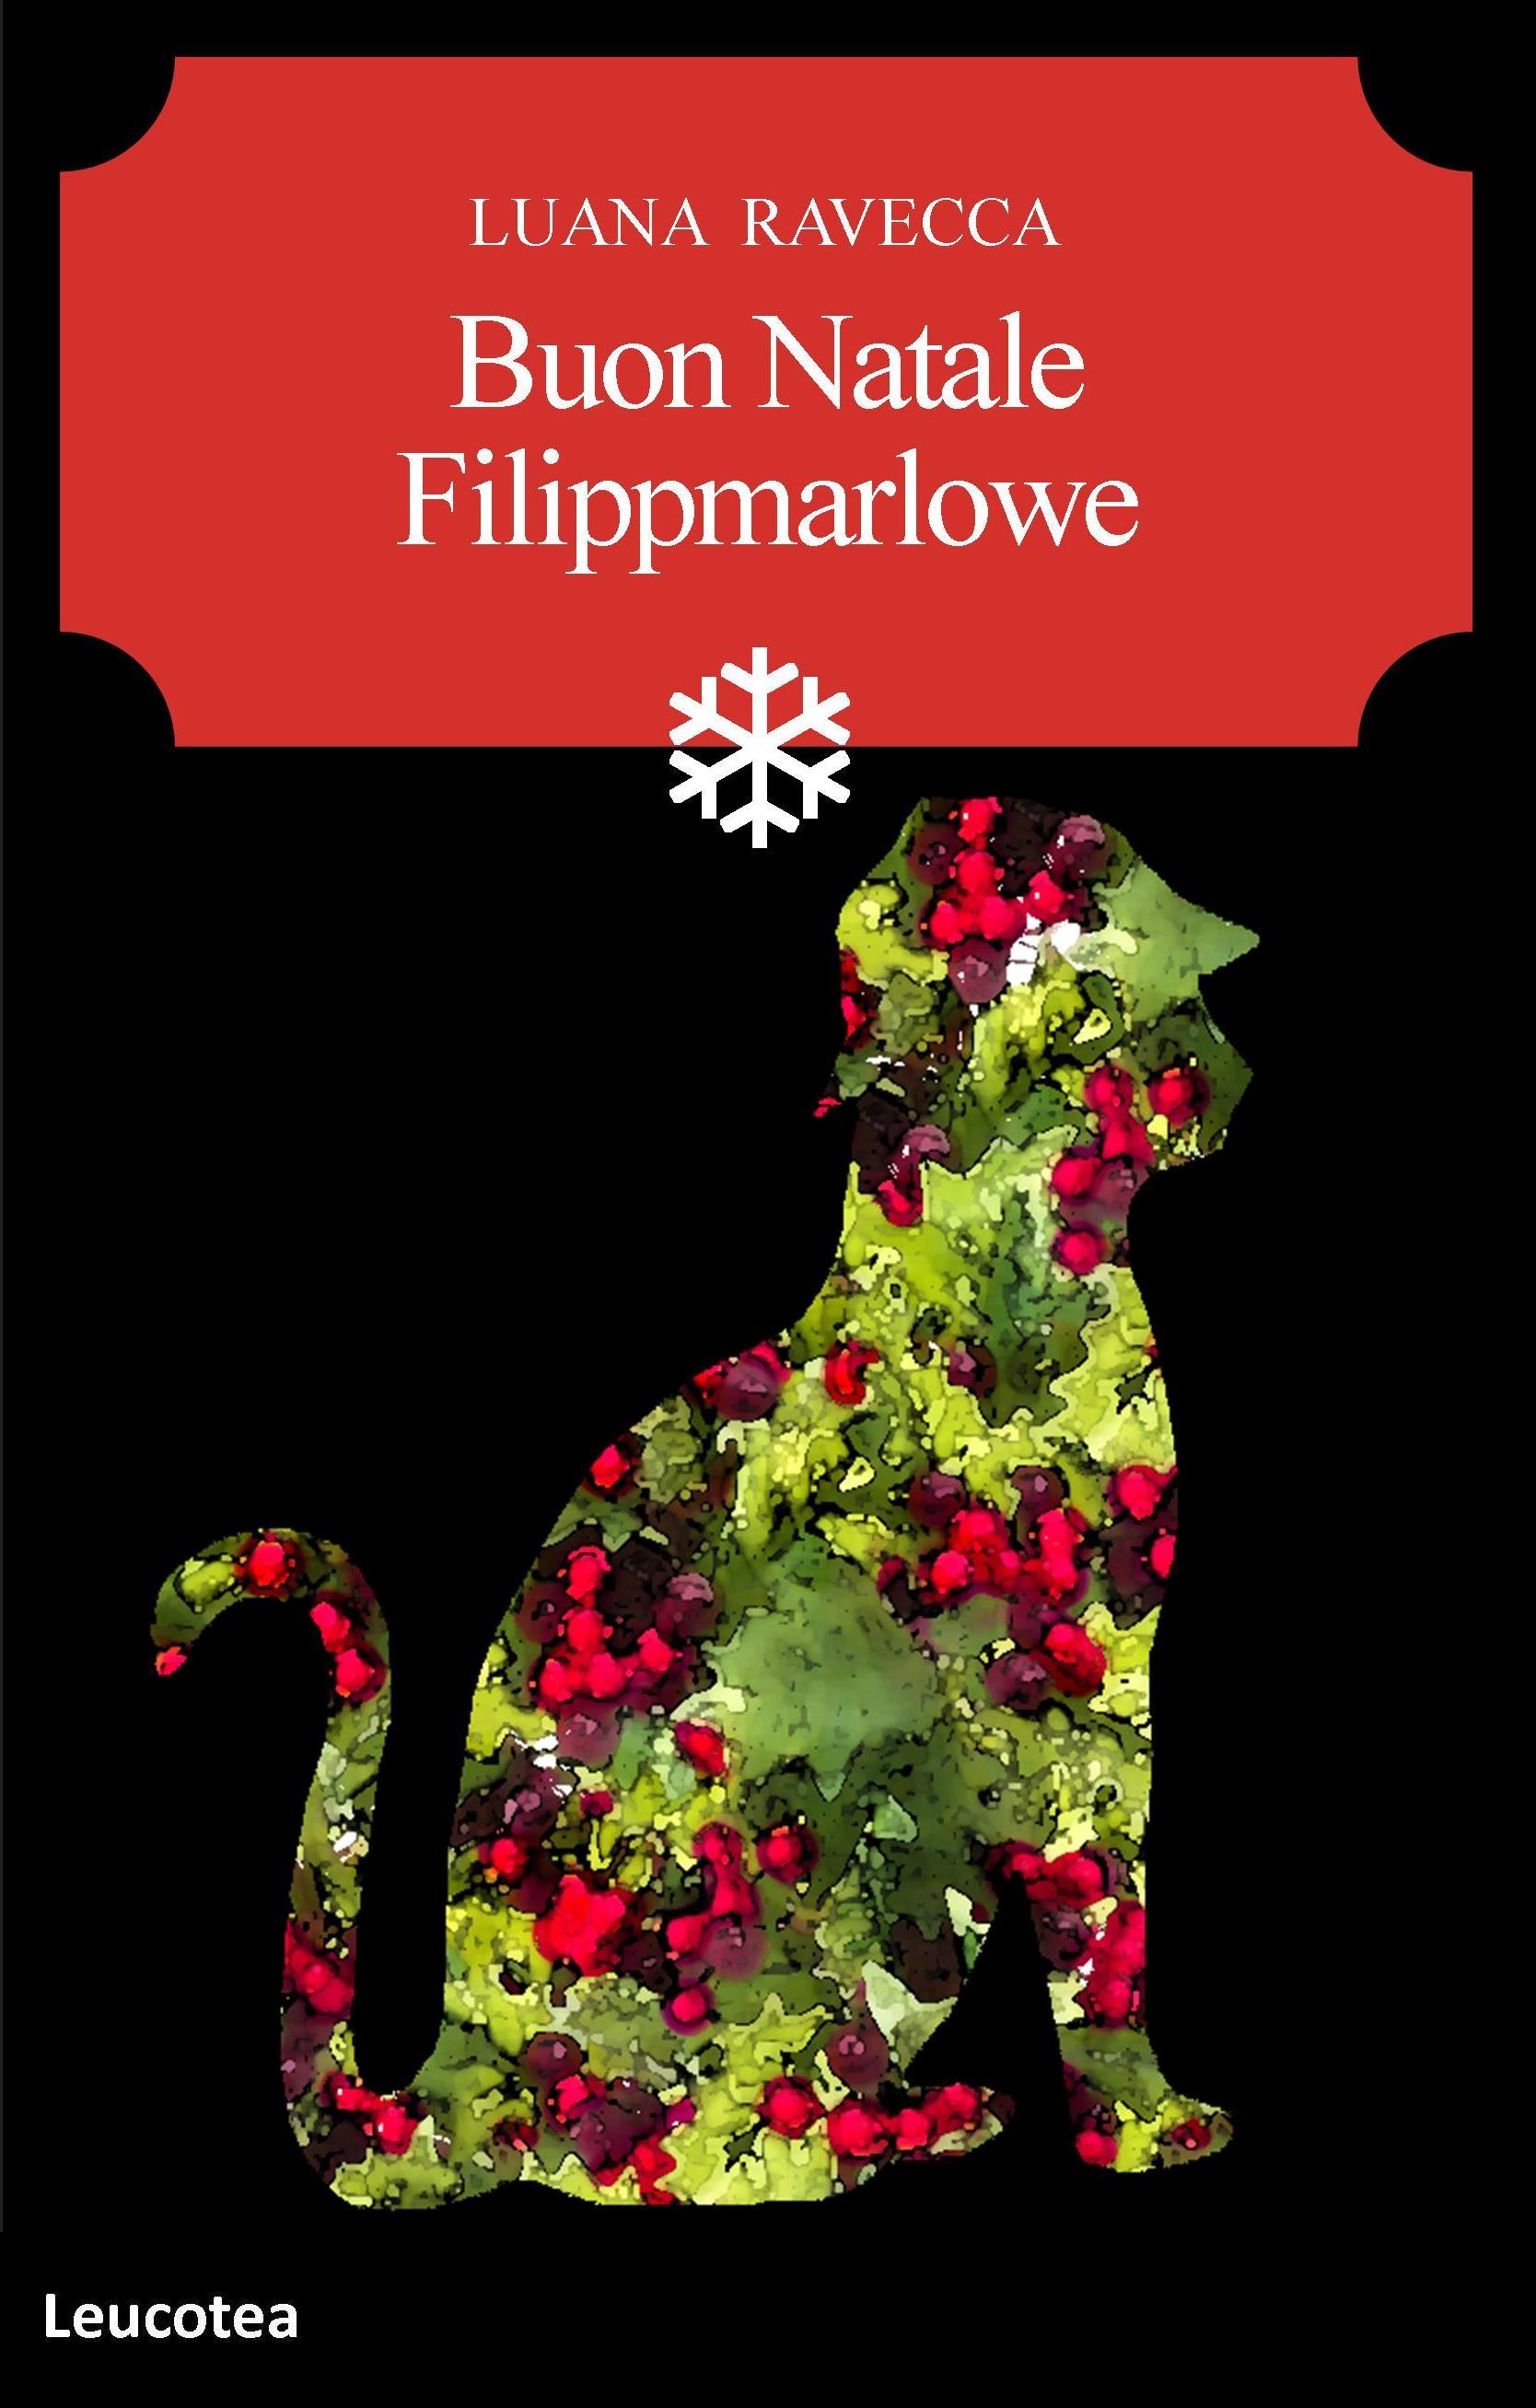 Per Natale una nuova avventura per Filippmarlowe, l’arguto gatto detective.